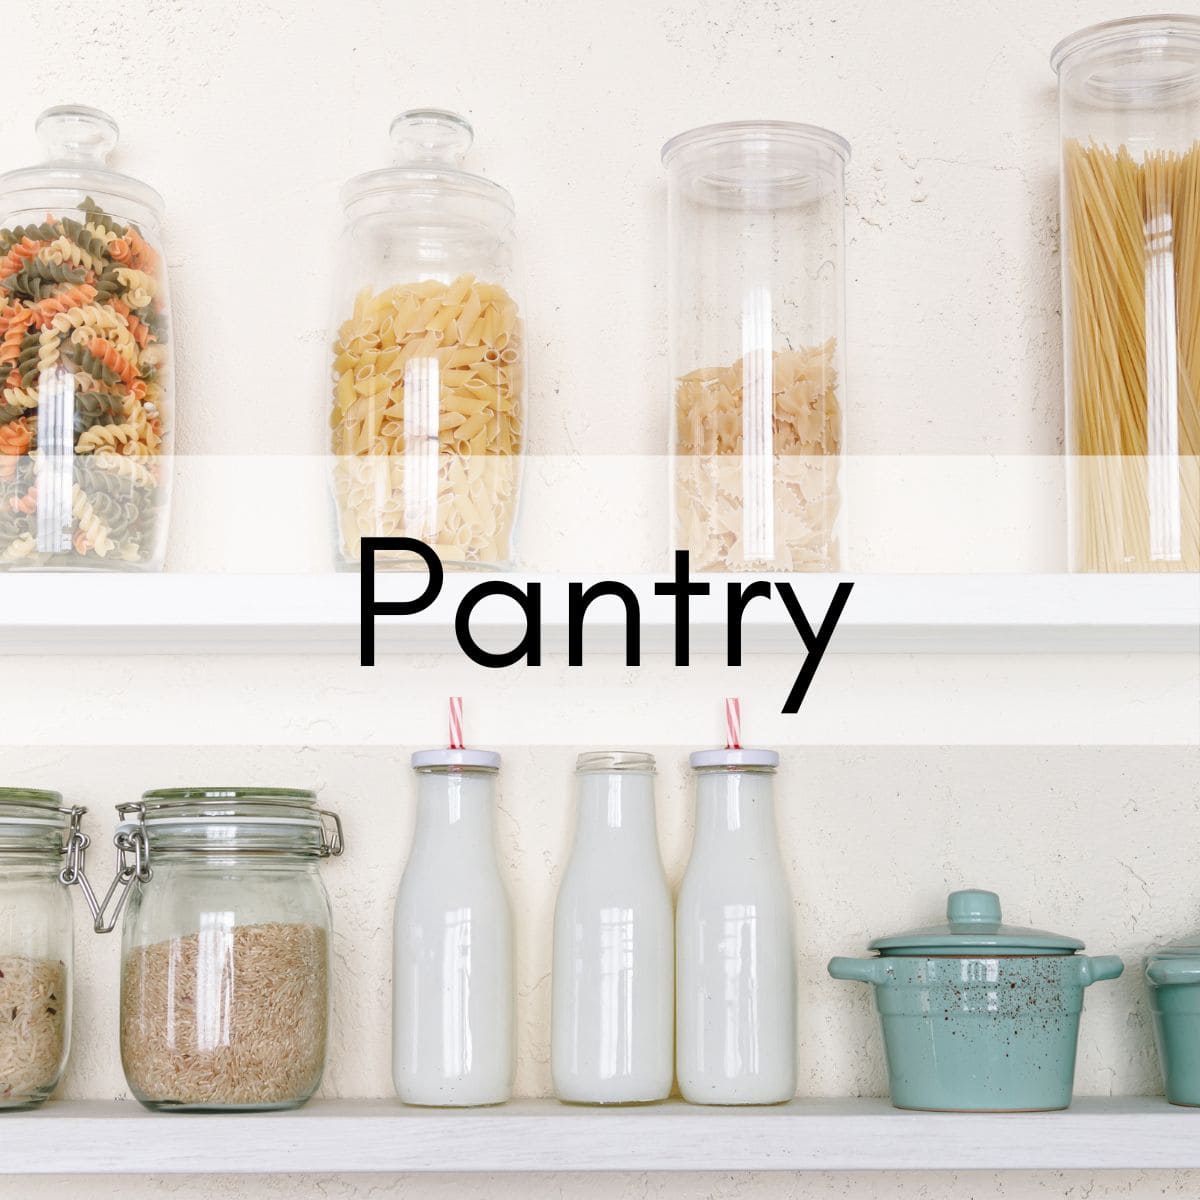 keto pantry items